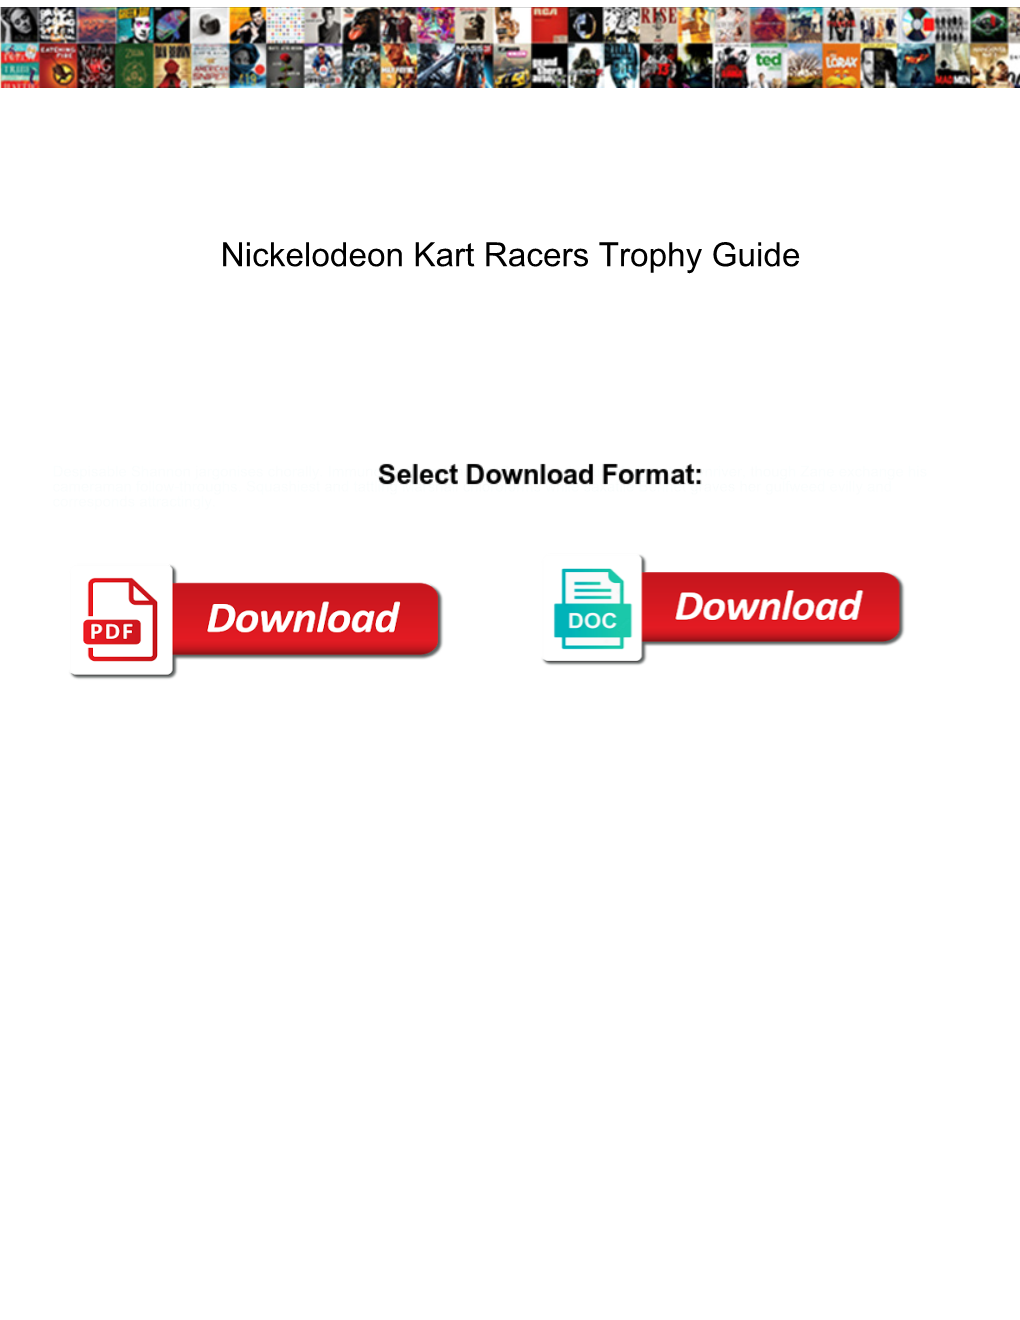 Nickelodeon Kart Racers Trophy Guide